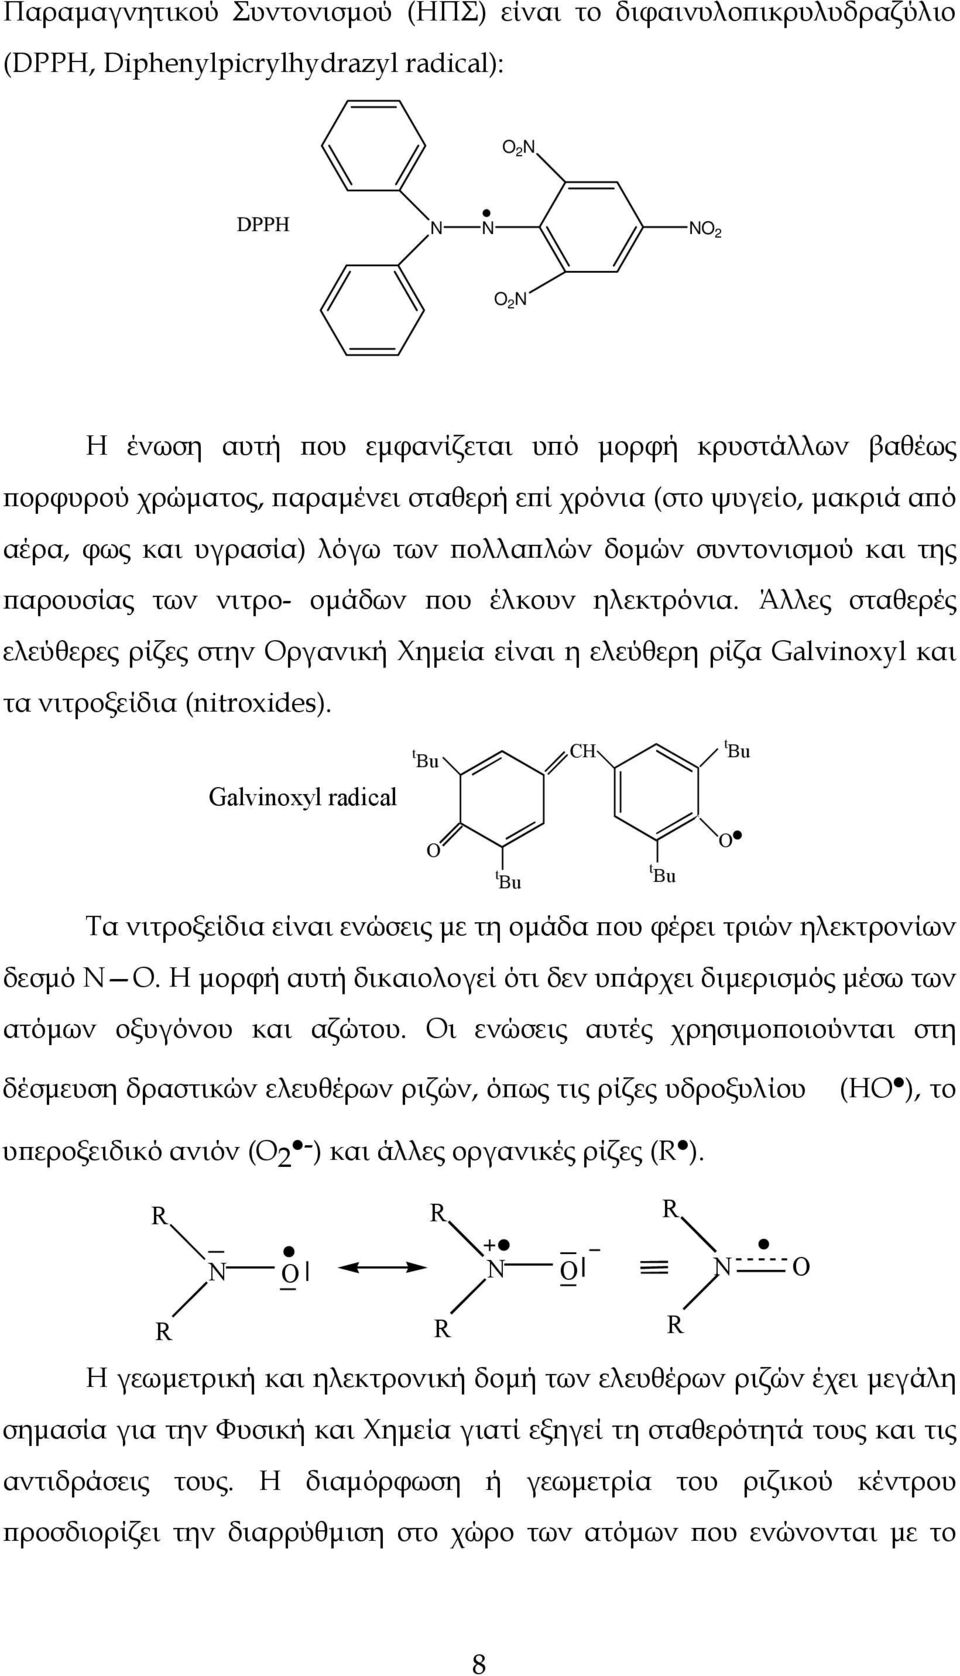 Άλλες σταθερές ελεύθερες ρίζες στην Οργανική Χημεία είναι η ελεύθερη ρίζα Galvinoxyl και τα νιτροξείδια (nitroxides).